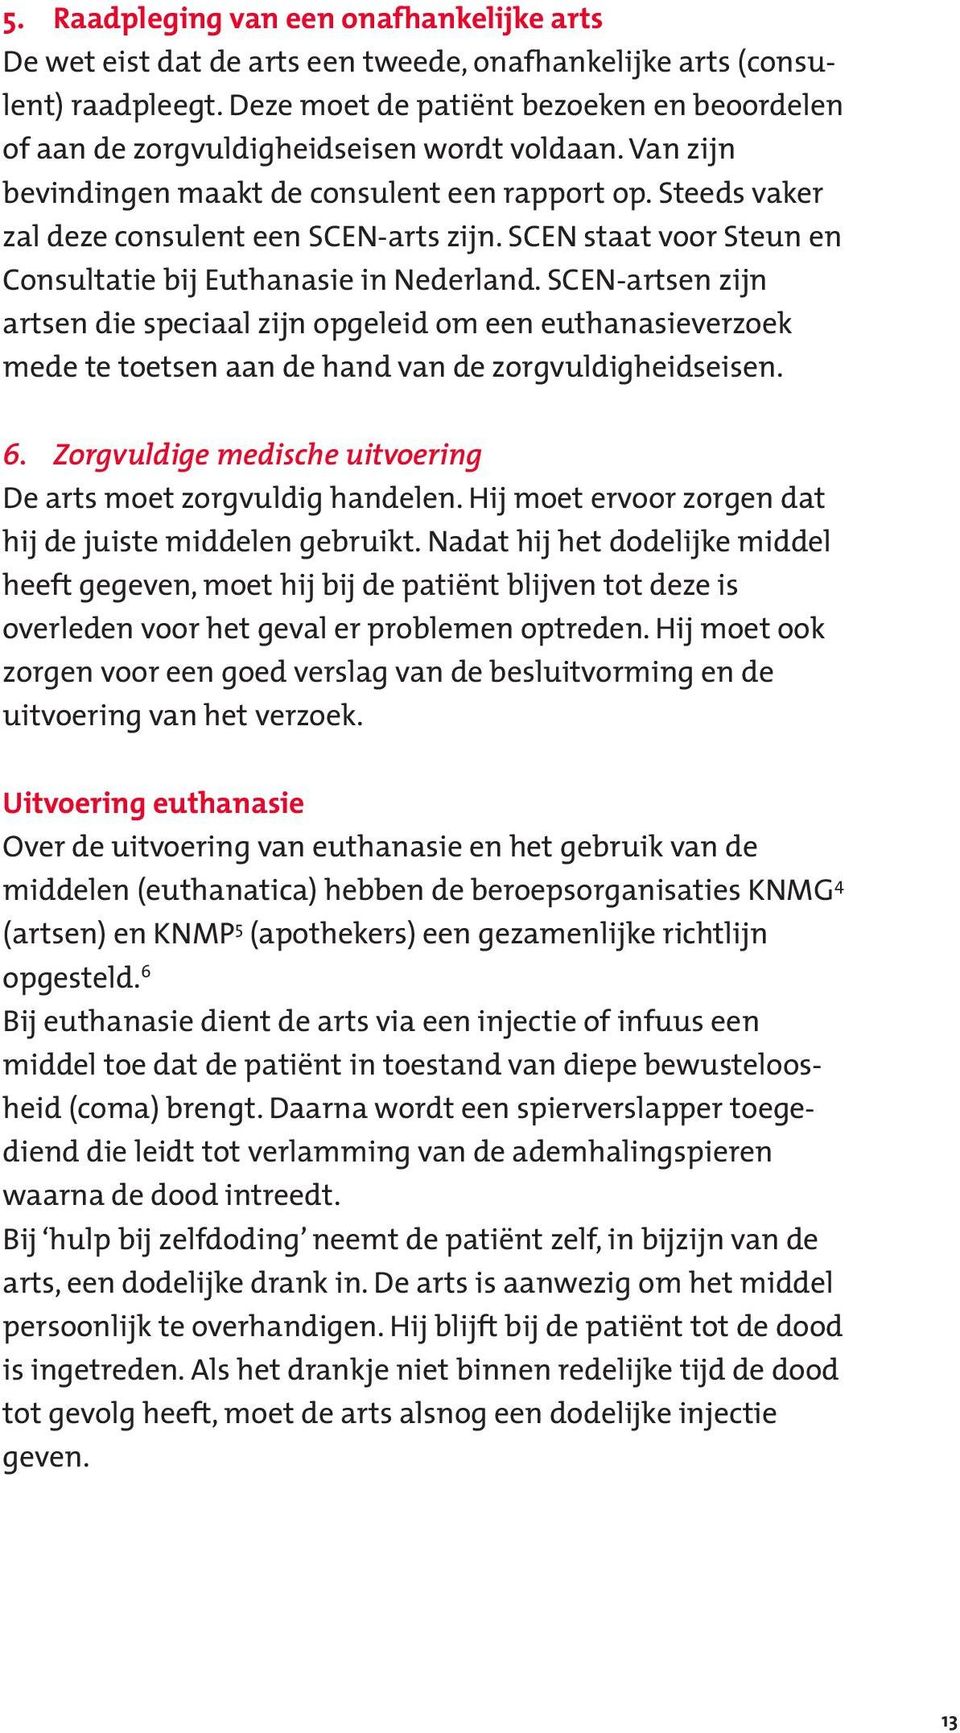 SCEN staat voor Steun en Consultatie bij Euthanasie in Nederland. SCEN-artsen zijn artsen die speciaal zijn opgeleid om een euthanasieverzoek mede te toetsen aan de hand van de zorgvuldigheidseisen.